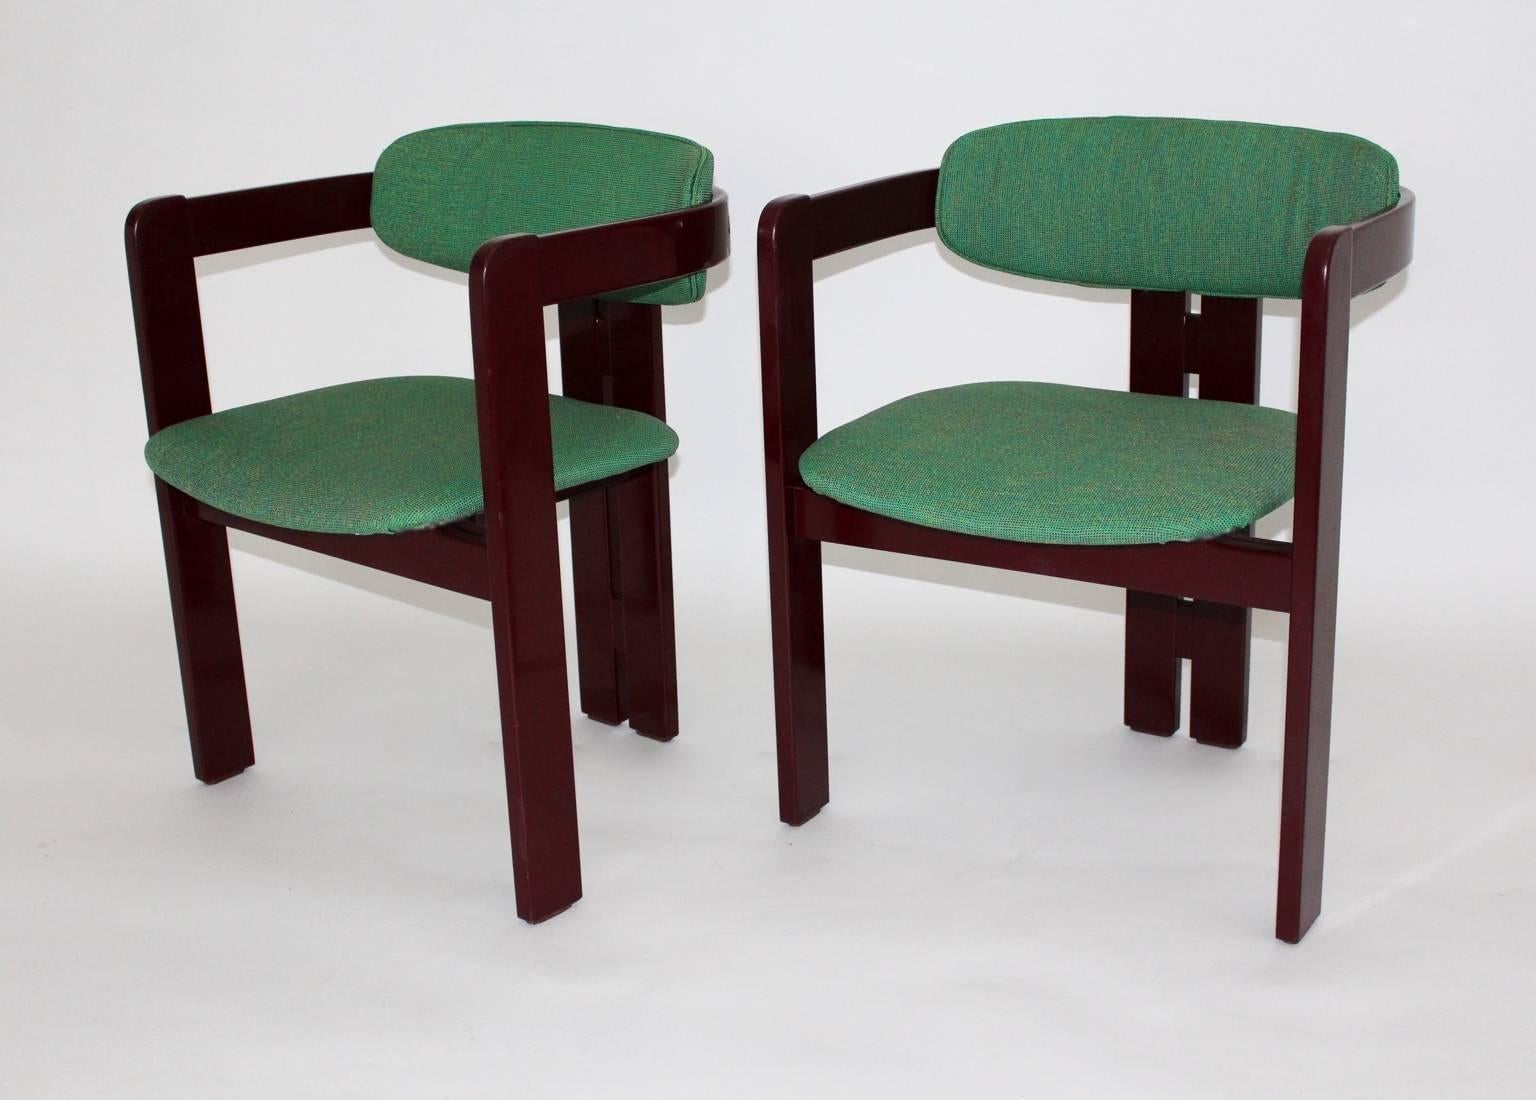 Ein italienischer Satz von zwei rot lackierten Buchenstühlen aus den 1970er Jahren.
Der Buchenholzrahmen ist rotbraun lackiert und weist leichte Altersspuren auf, während Sitz und Rückenlehne neu mit grün gesprenkeltem Textilgewebe bezogen